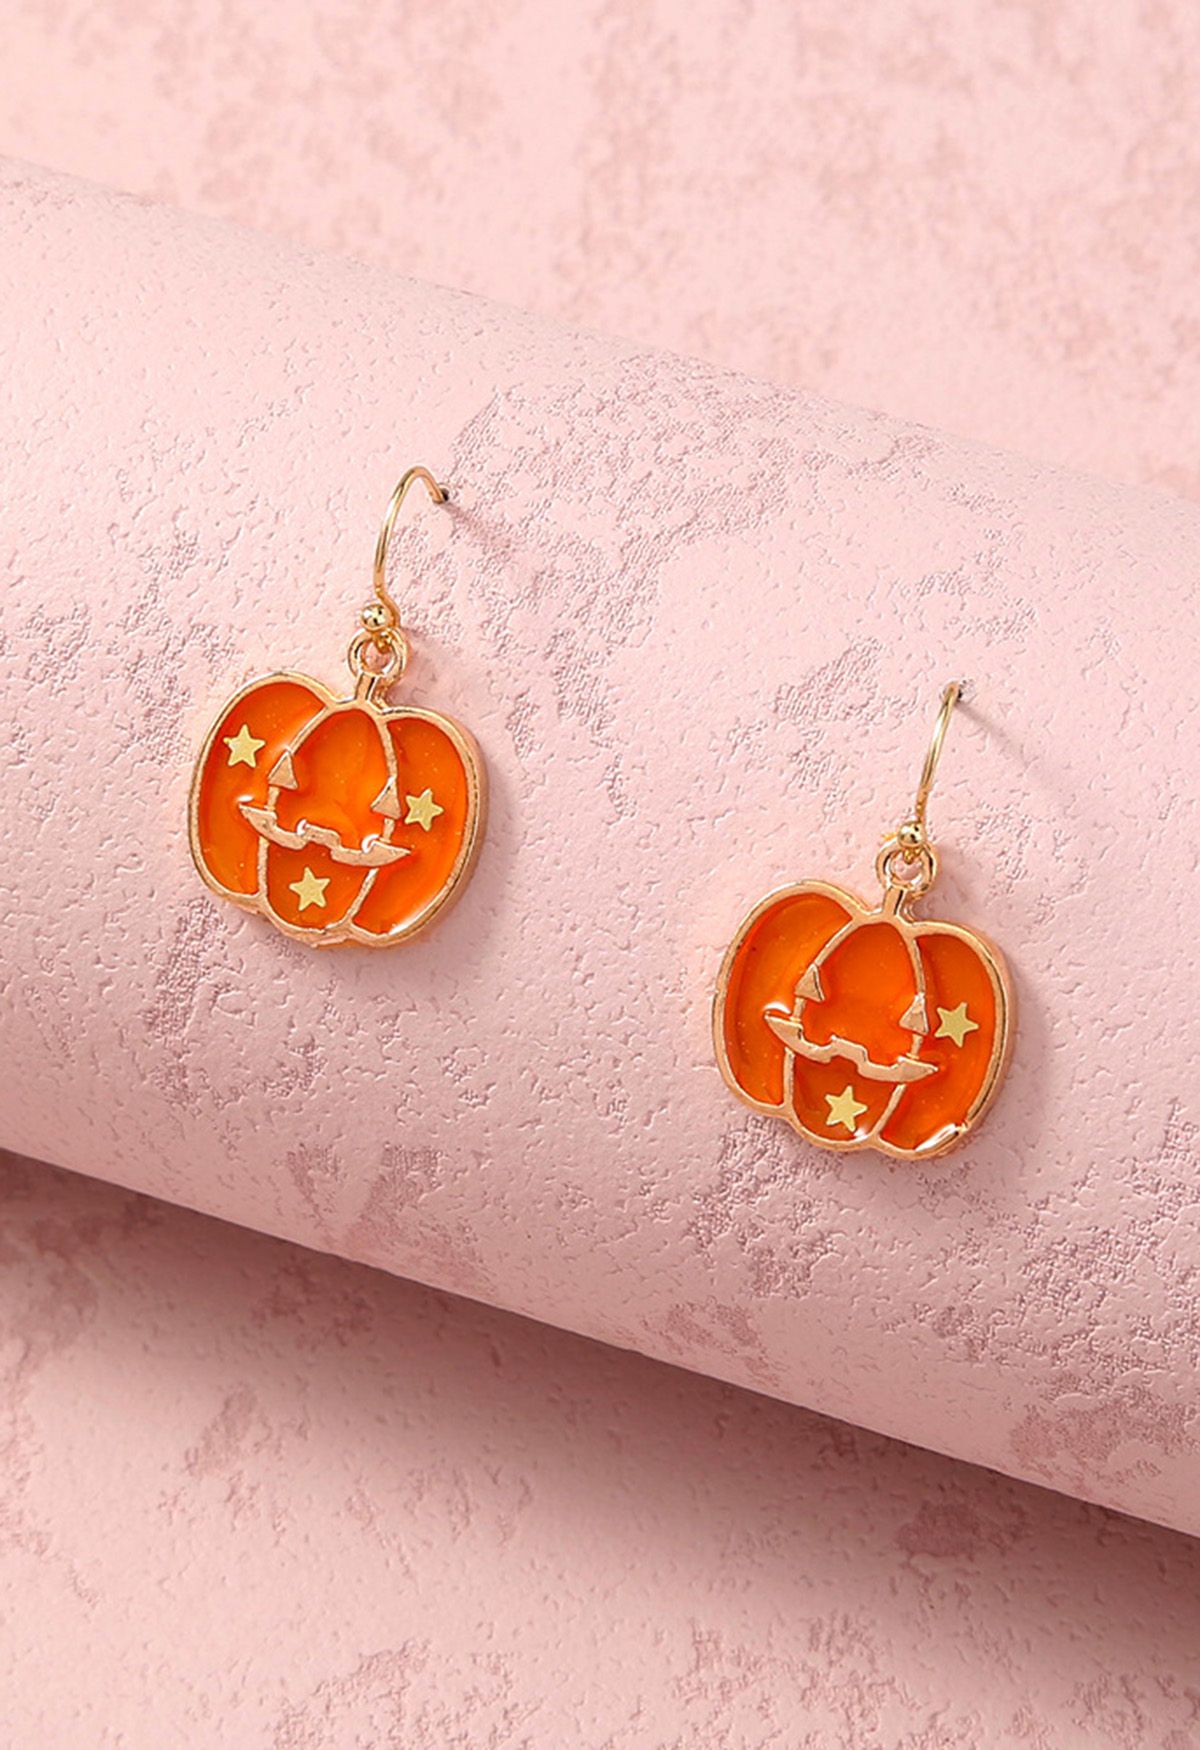 Starry Embellished Pumpkin Earrings
